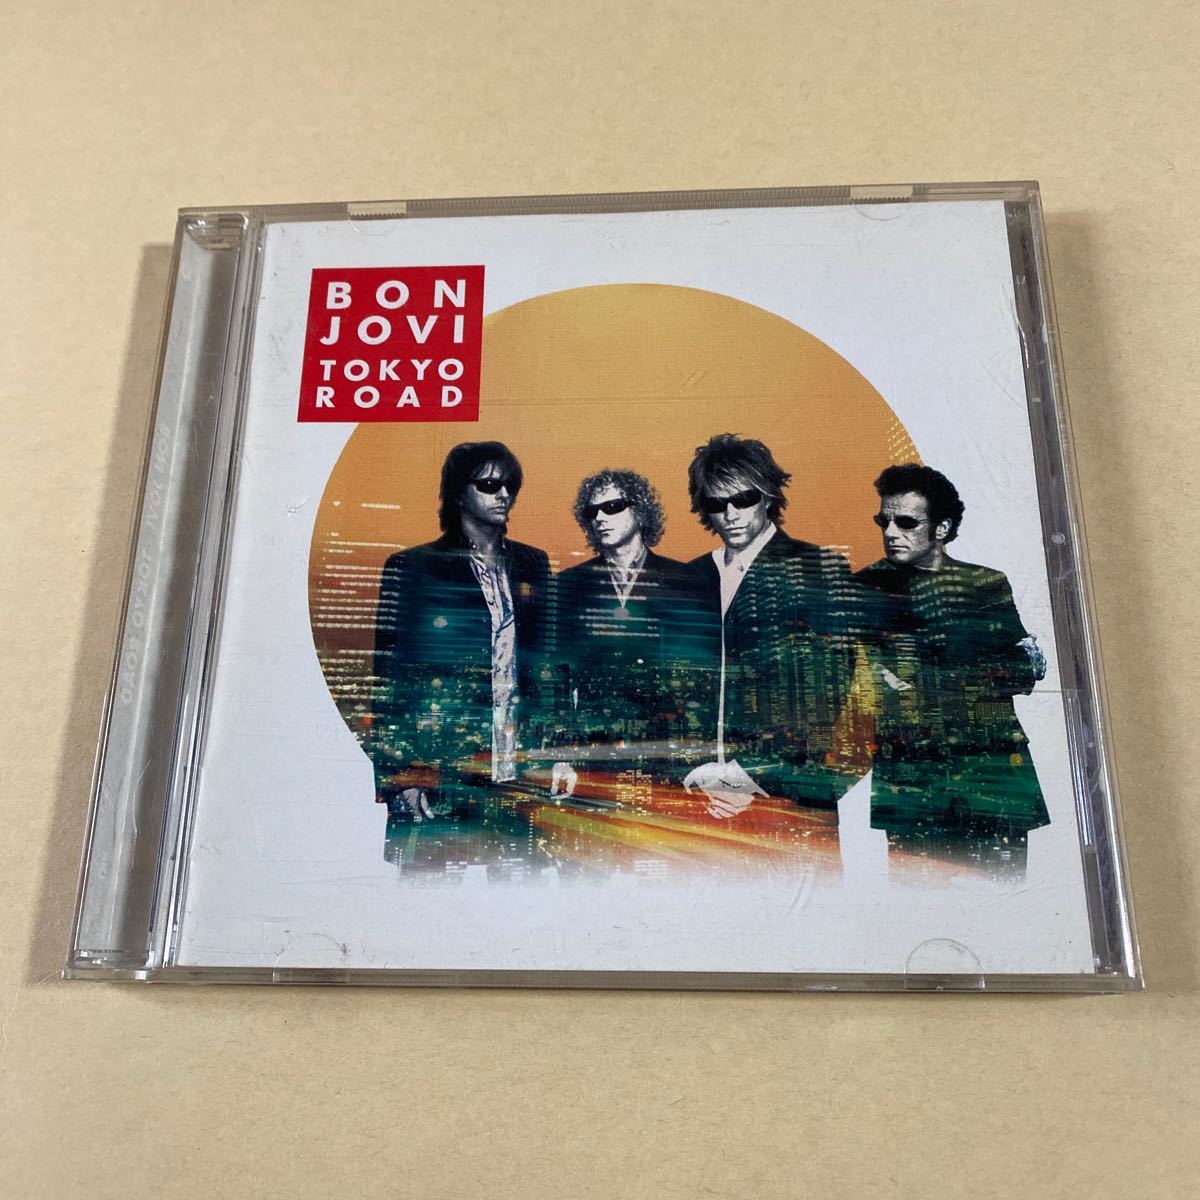 Bon Jovi 2CD「TOKO ROAD」_画像1